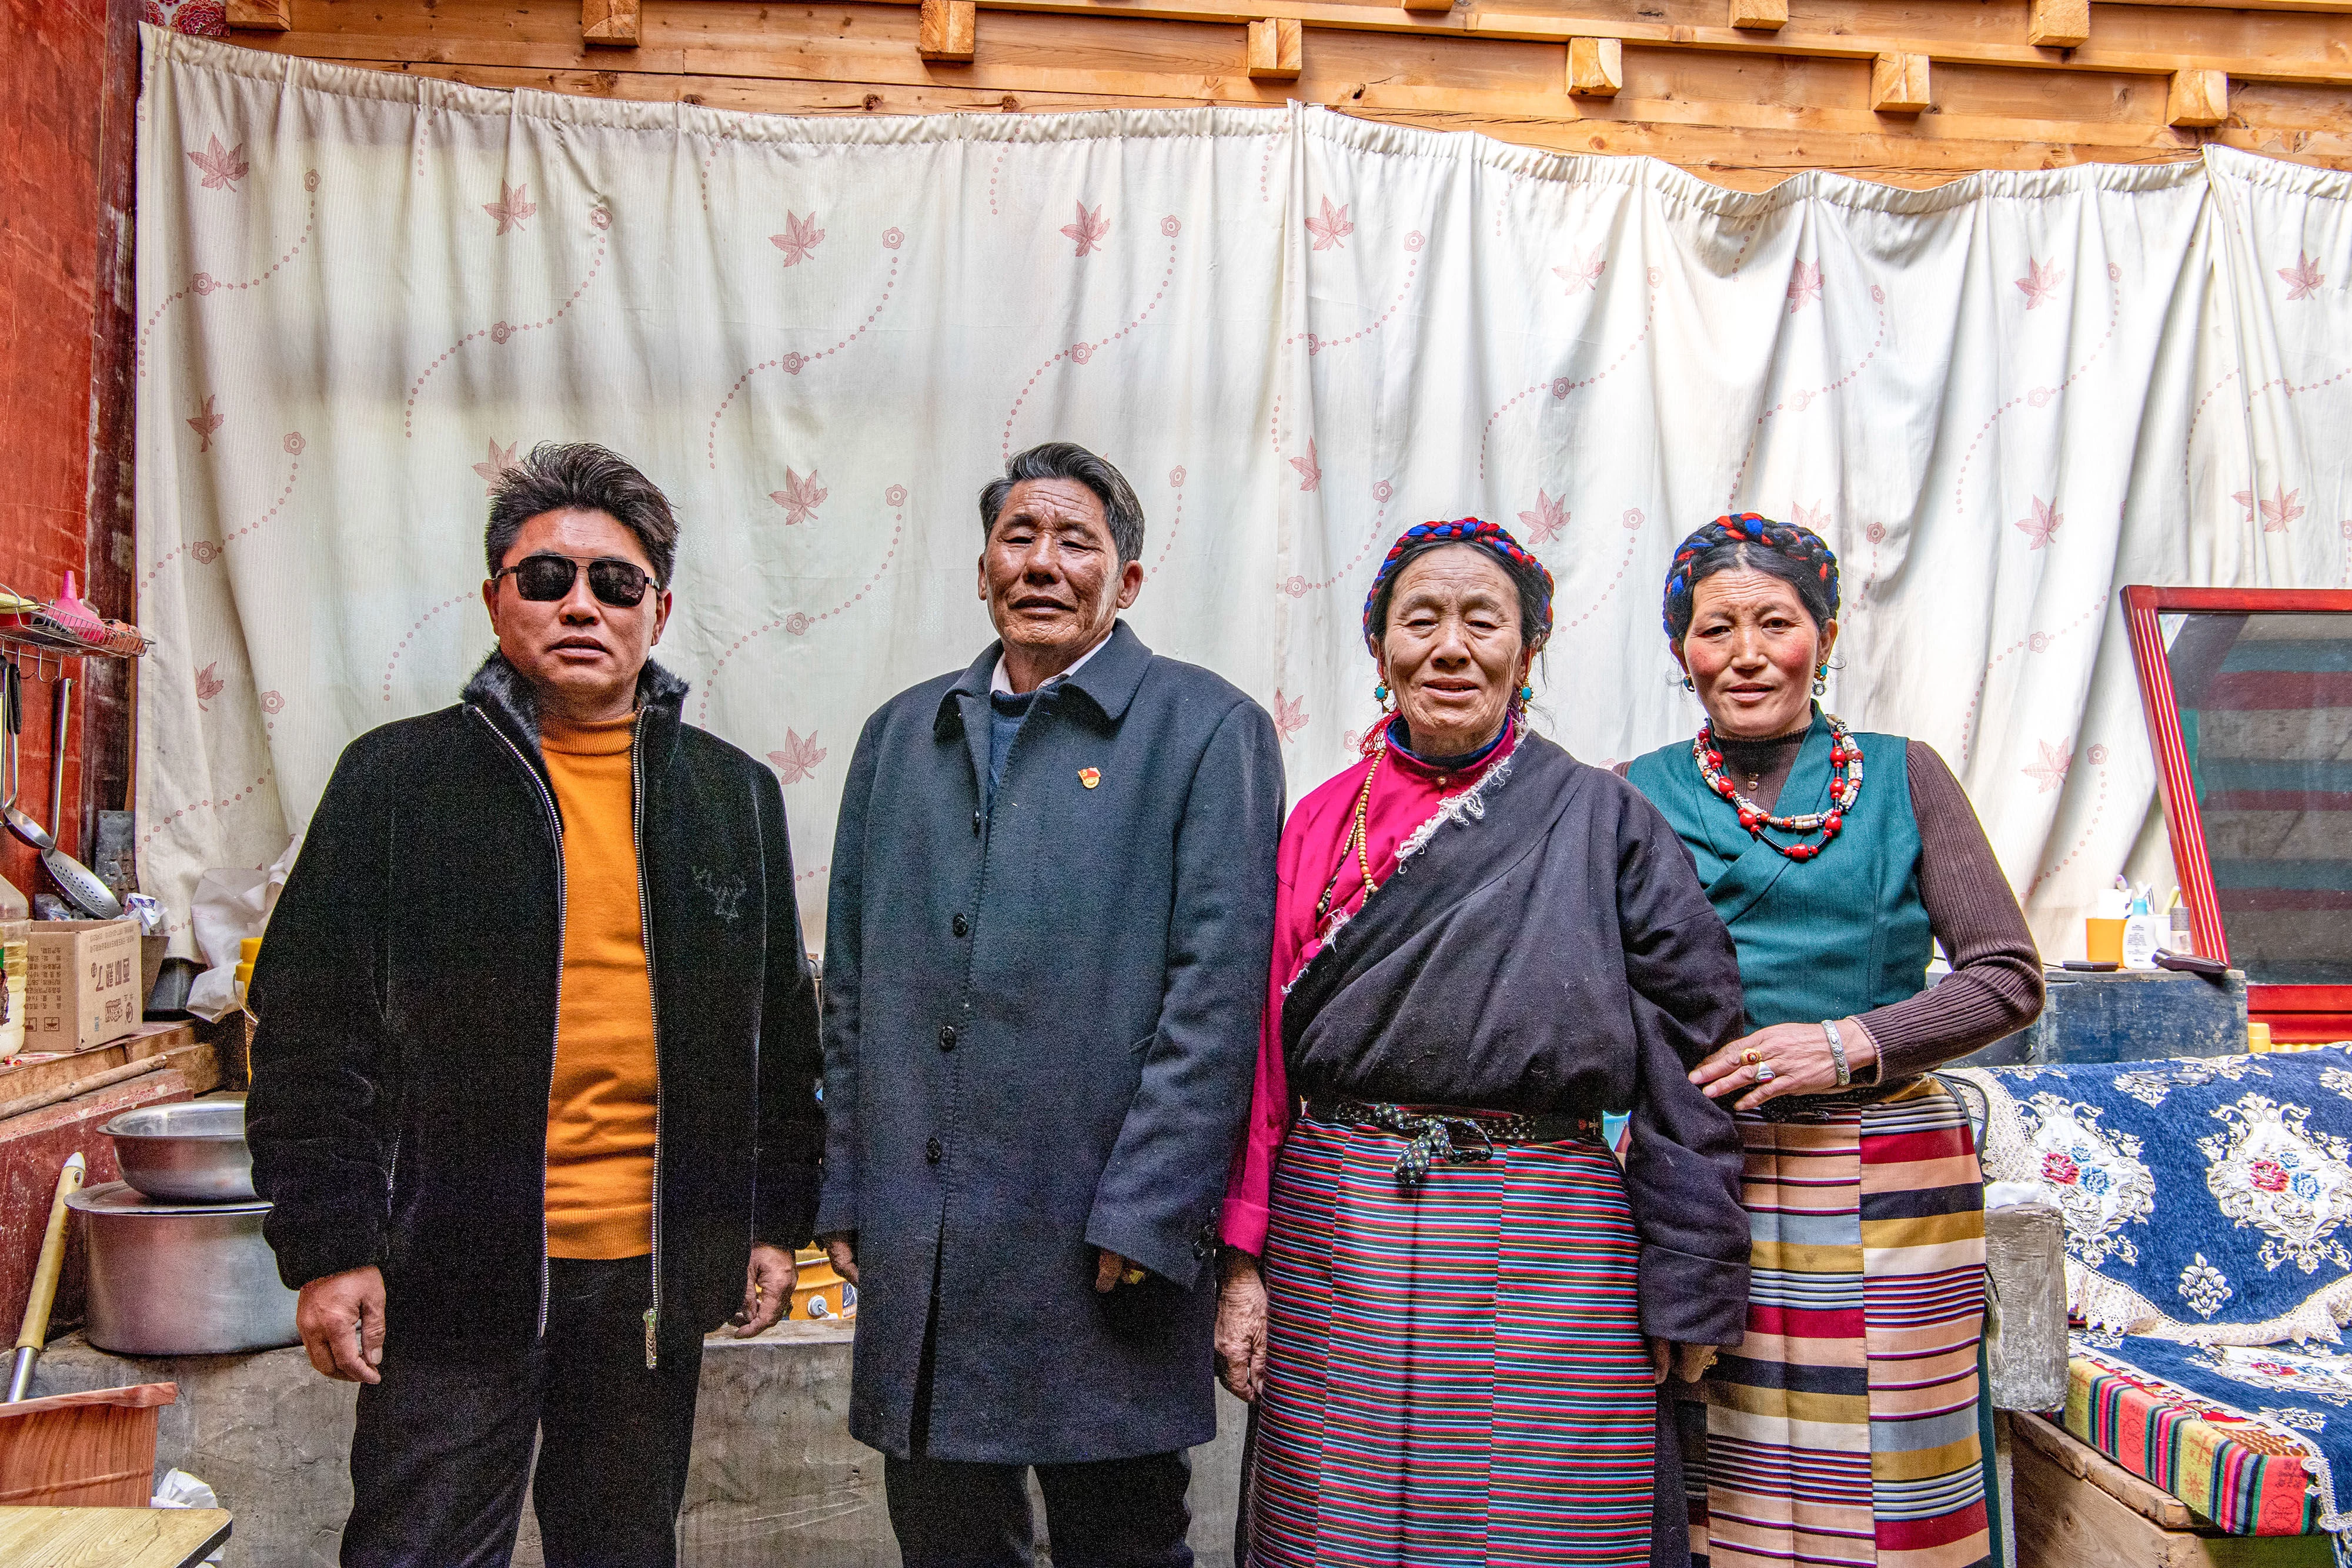 新华社照片，拉萨，2021年4月14日 苦难和新生——西藏翻身农奴影像档案：洛松朗加 洛松朗加（左二）和家人合影（2月19日摄）。 洛松朗加家住西藏昌都市左贡县旺达镇列达村，从六七岁有记忆开始，洛松朗加的生活里就只有给农奴主放牛、拾柴火和捡牛粪。 家里7口人，只有1亩多地，还要交沉重的赋税，农奴稍一做错事就会被打。小时候的洛松朗加，曾亲眼看到过爷爷被农奴主吊起来毒打。仅仅是外出打猎的收获不好，爷爷就被打了100大板，当场晕了过去，话都说不出来，身上的伤很久都好不了。“是后来解放军来了，才给爷爷治好了伤。”洛松朗加说。 民主改革后，工作组带领群众分田地、分住房。洛松朗加家里分到了12亩地、1匹马和5头牛。除了终于拥有了自己的生产资料之外，洛松朗加“最大的感受是自由”。“想说什么就可以说什么，想做什么就可以做什么。自己的牛可以自己养，自己的地也可以自己种，收成都是自己的。”洛松朗加的回忆中充满了幸福。 1961年，12岁的洛松朗加第一次走进了乡里的学校。1964年，他又考入了县城里的小学。长大后，他从一名基层干部开始，不断成长进步。 在基层工作了一辈子，洛松朗加最为自豪的就是自己为群众真正做了些事。二十世纪八十年代末到九十年代初，他在县农牧局工作时，主持了推广冬小麦的工作，让左贡冬天的农田不再闲置。有些农民一开始不相信冬天地里也能长粮食，他就一家一家去做工作，发动党员率先试种。一些偏远的村庄路途遥远，他和干部们就自己带被褥、口粮，坚决不为群众家里多添一张吃饭的嘴。他还参与过“藏青320”等青稞新品种的推广工作，县里的青稞亩产量增长了约五成。 “以前农奴主名义上是地方管理者，但他们都是为了自己的利益，制定的政策都是为了壮大自己的家族，哪管农奴的死活。”洛松朗加感慨地说，“但共产党的官是为老百姓当的，心里装的永远是人民！” 新华社记者 孙非 摄